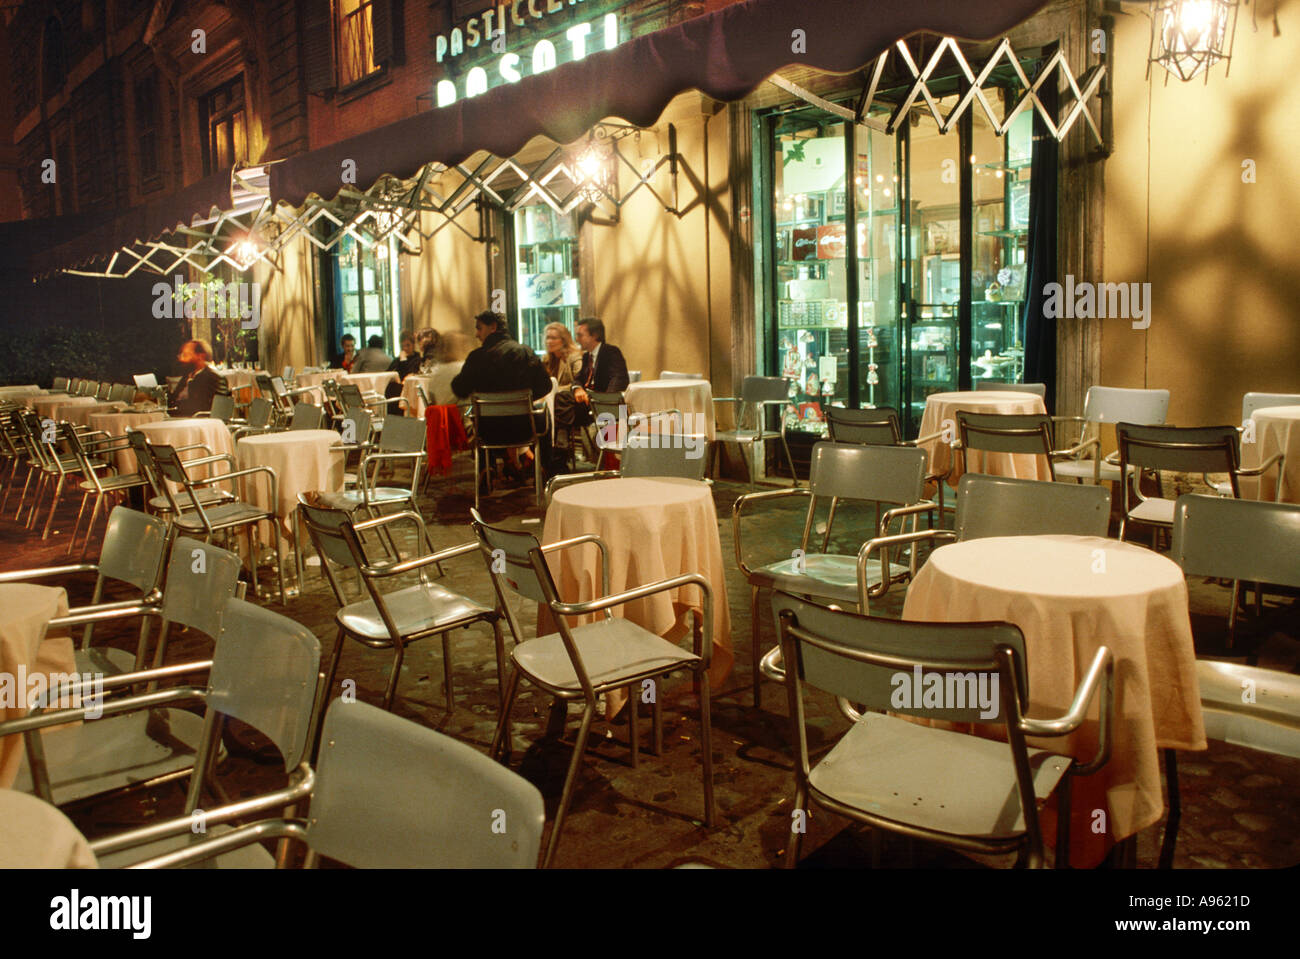 The cafe Rosati In piazza del popolo Rome Italy Stock Photo - Alamy